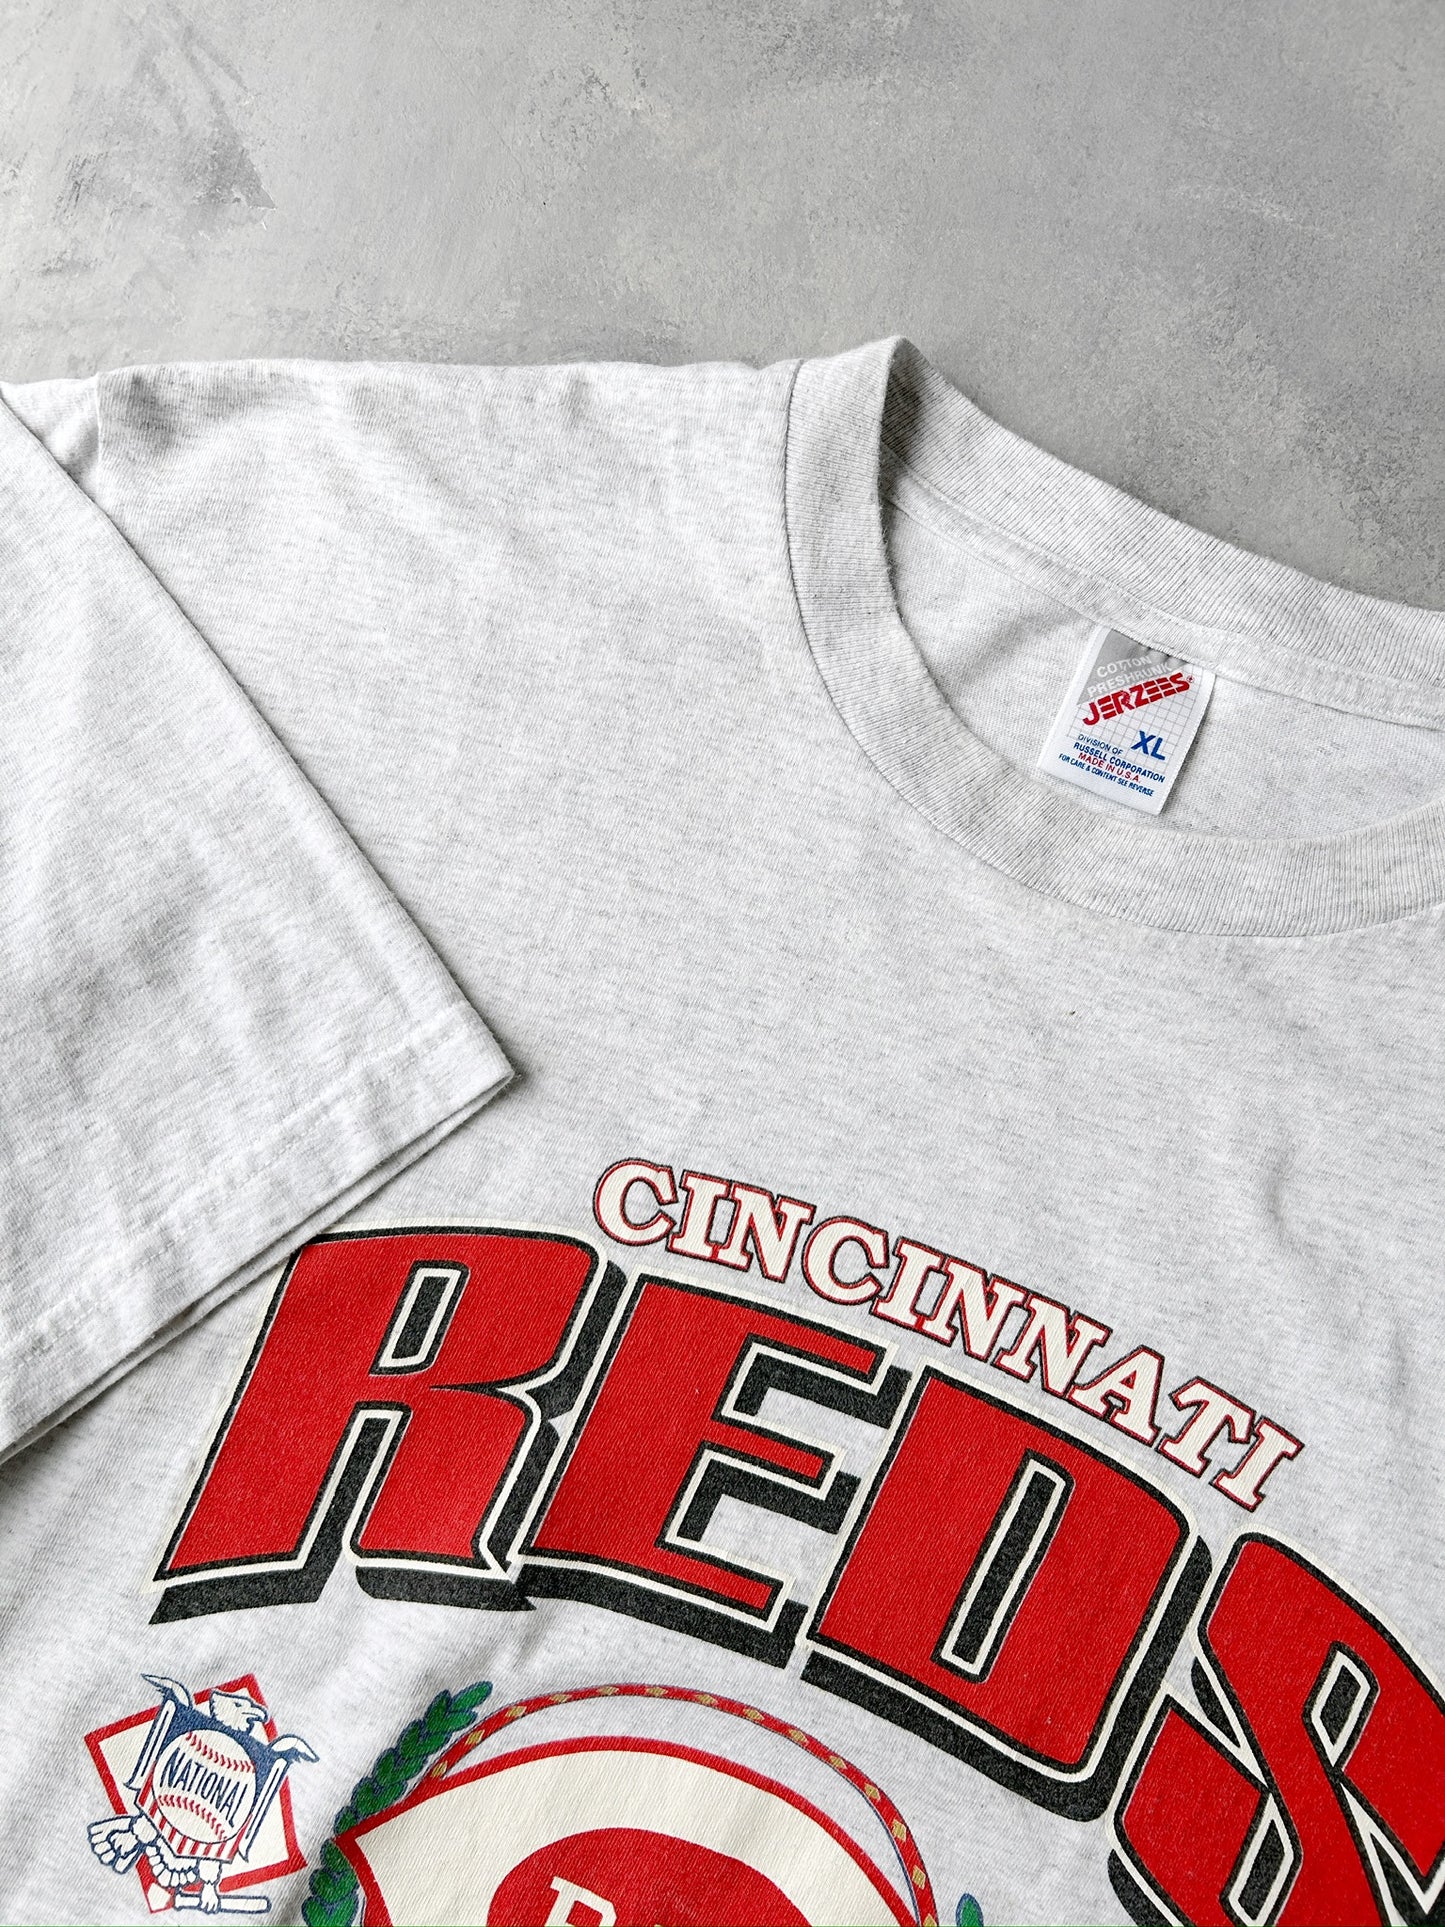 Cincinnati Reds T-Shirt '95 - XL